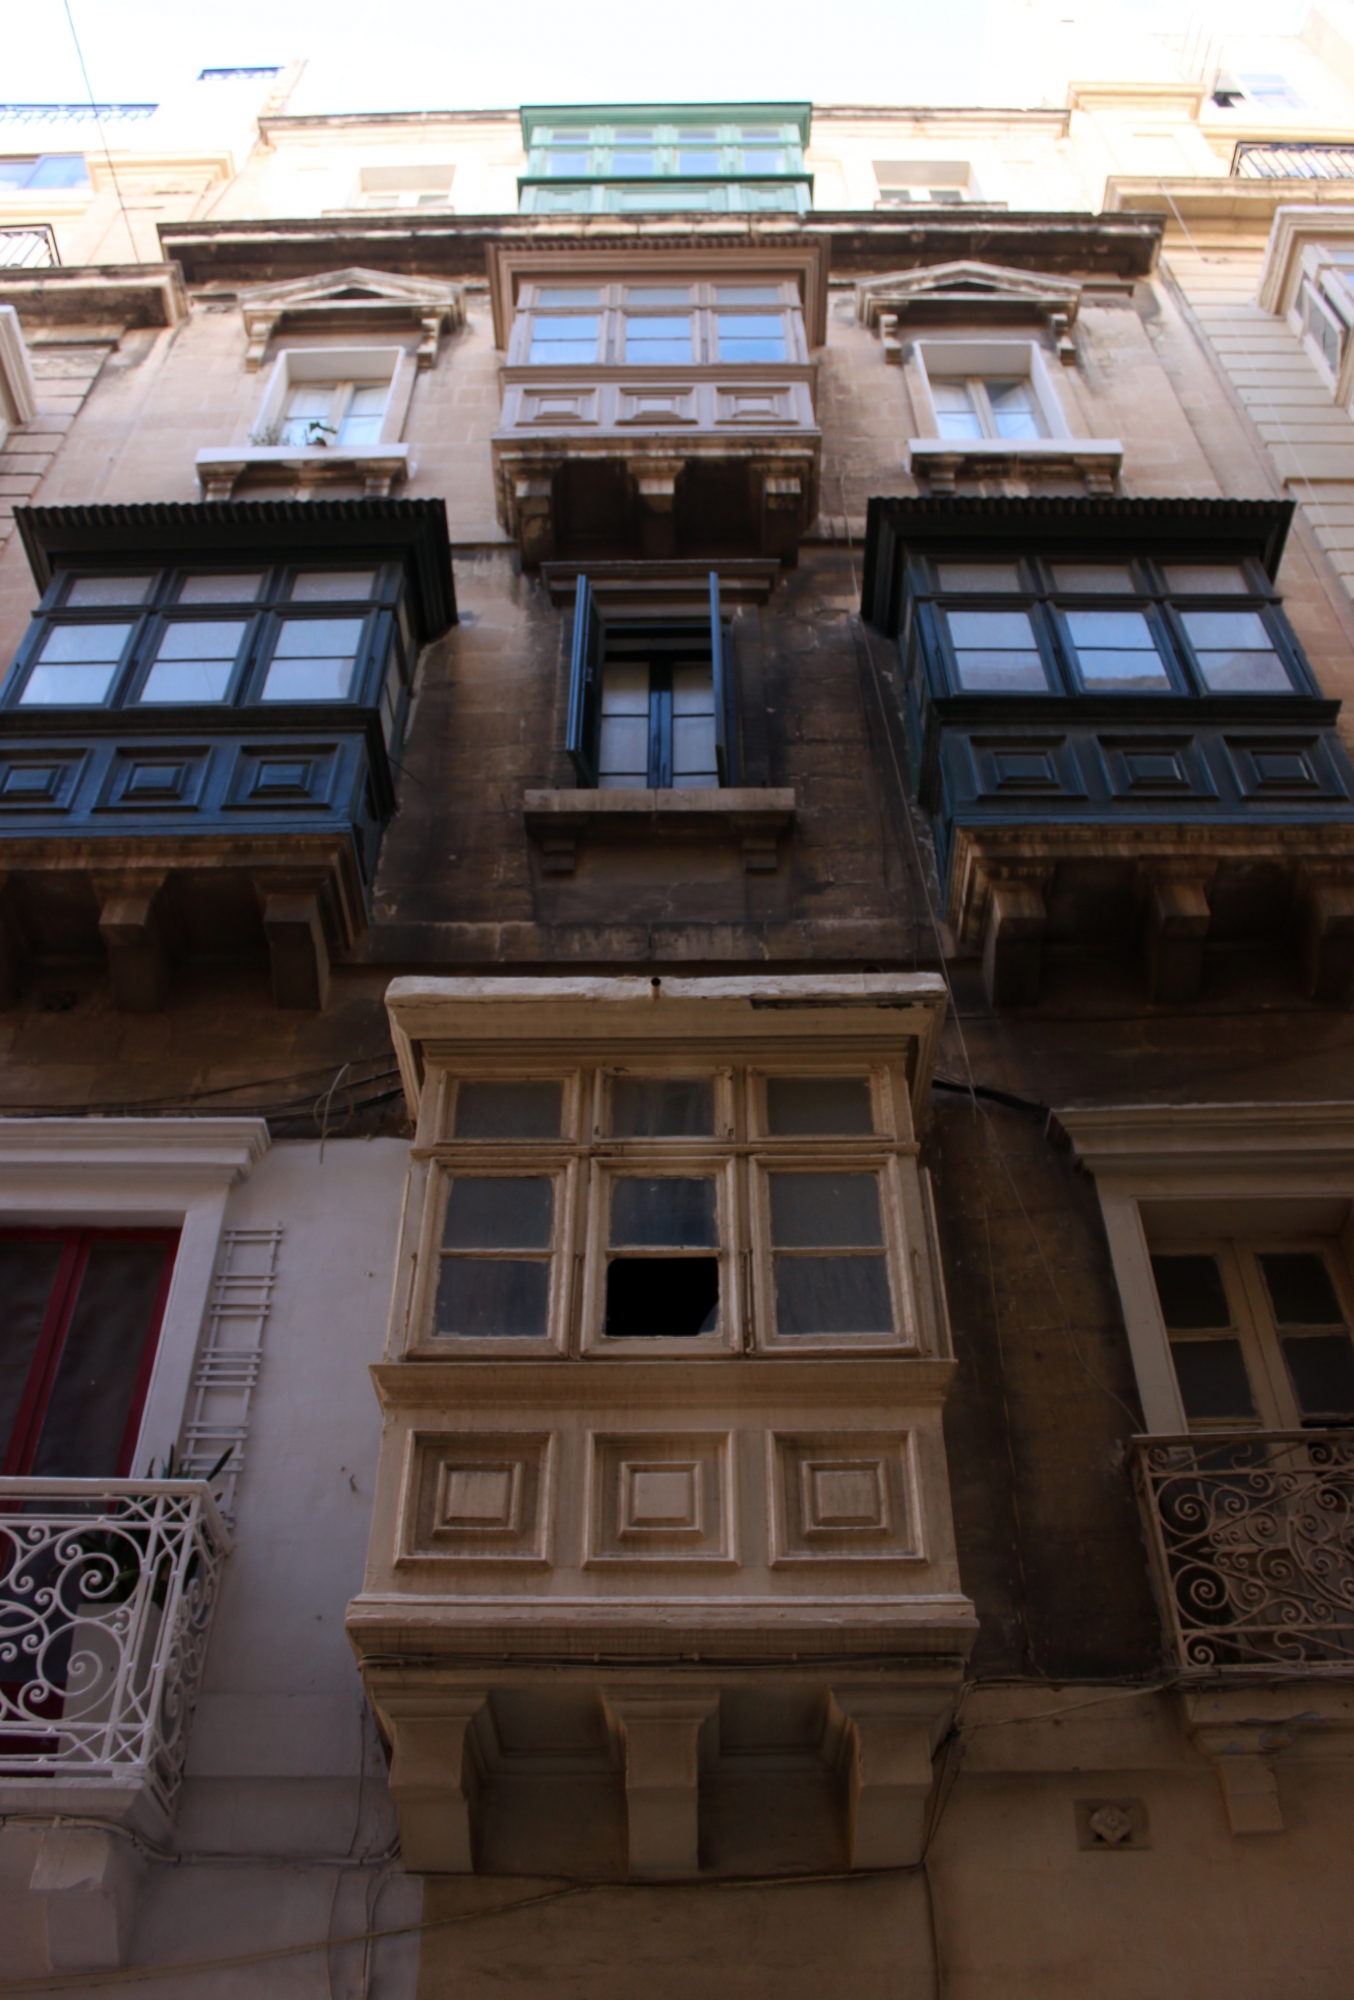 Balcons de facades de maisons maltaises